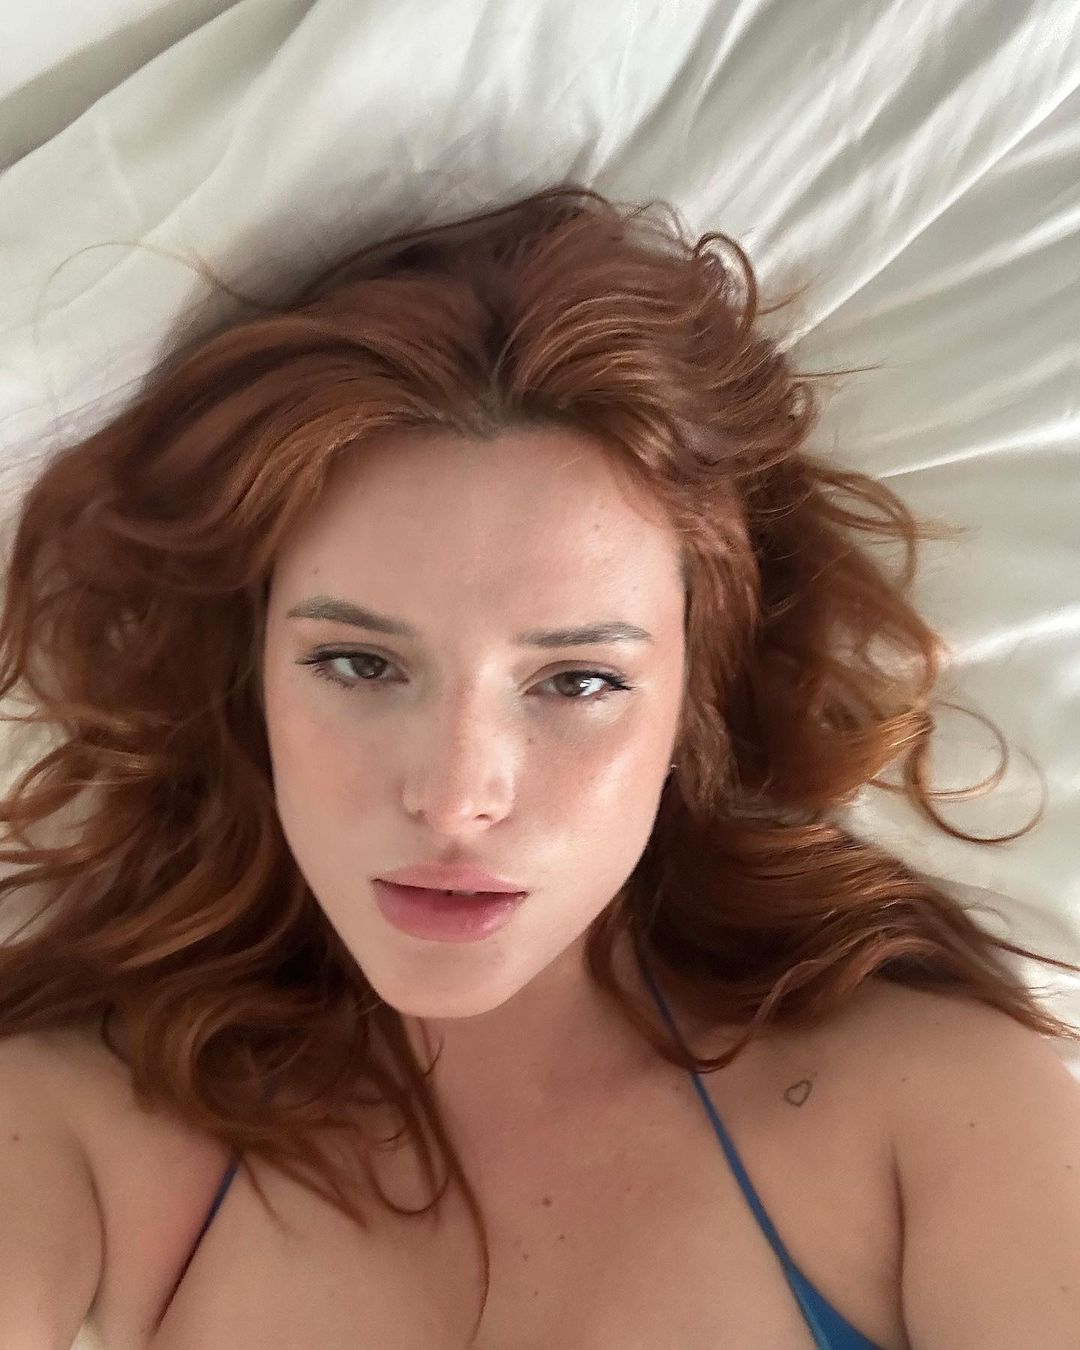 Photos n°5 : Bella Thorne’s Bedroom Selfies!